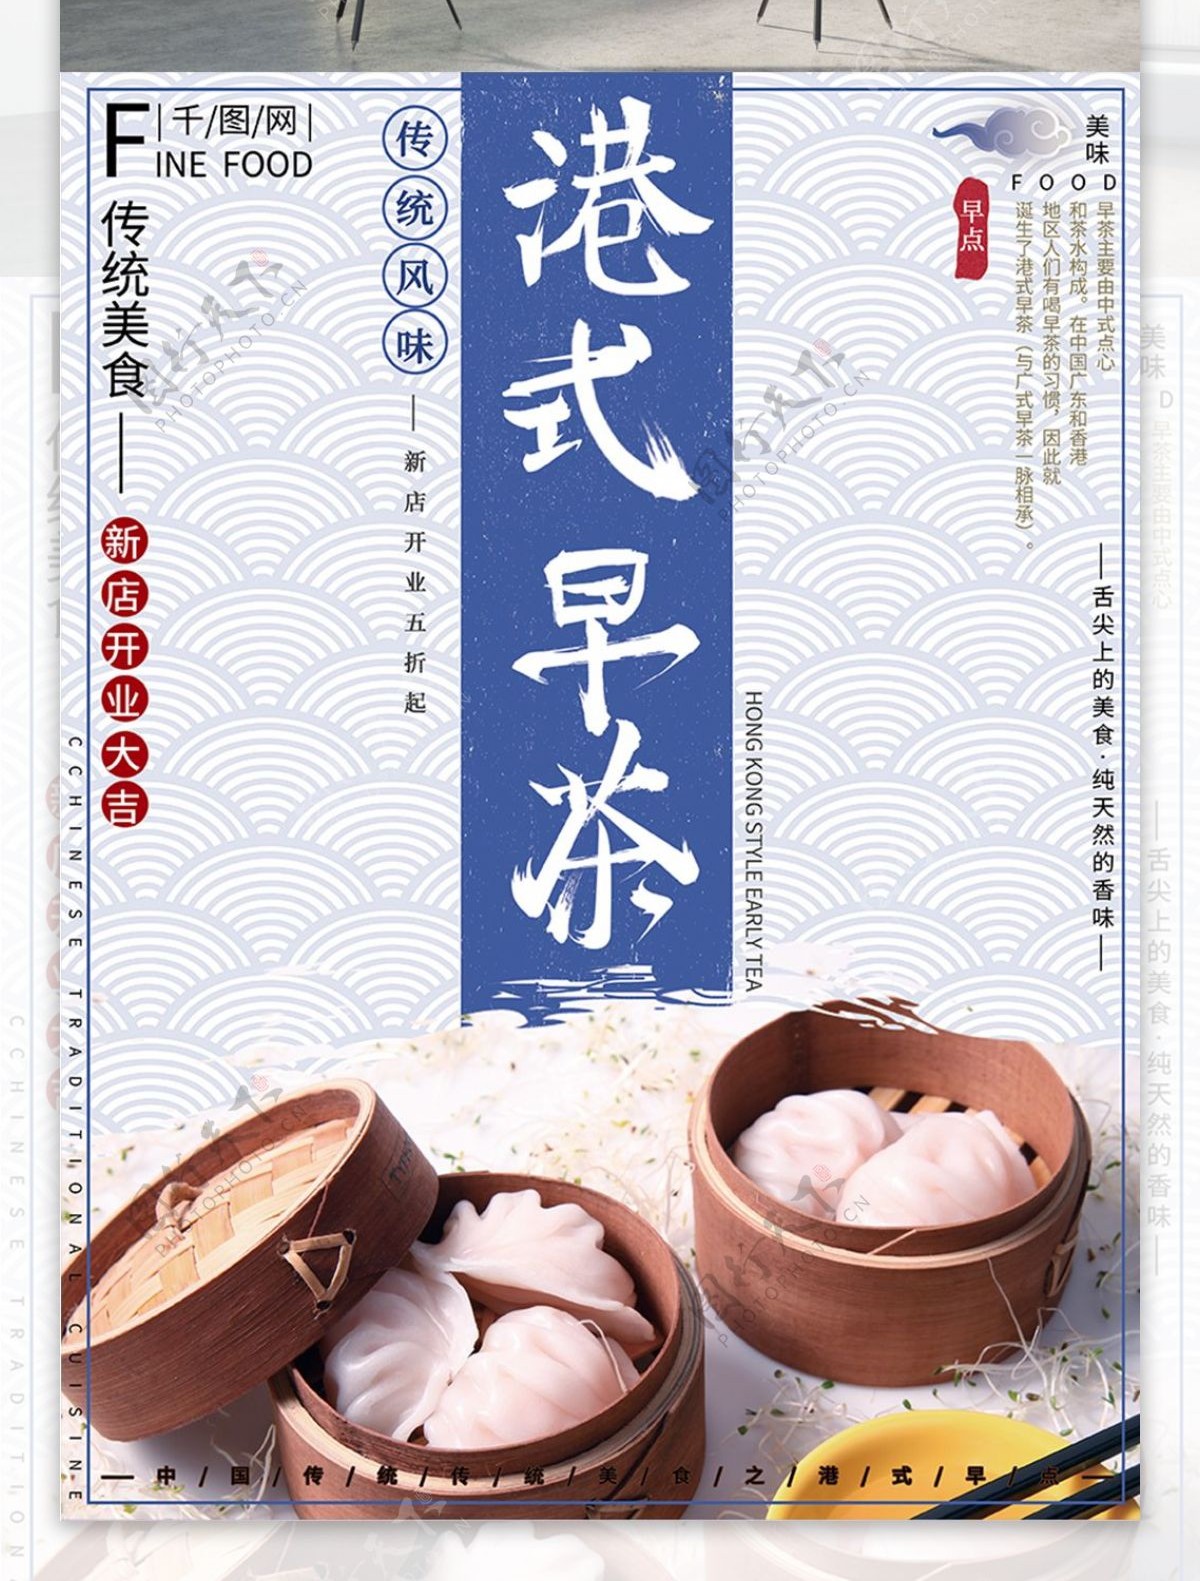 中国风复古简约大气港式早茶美食促销海报